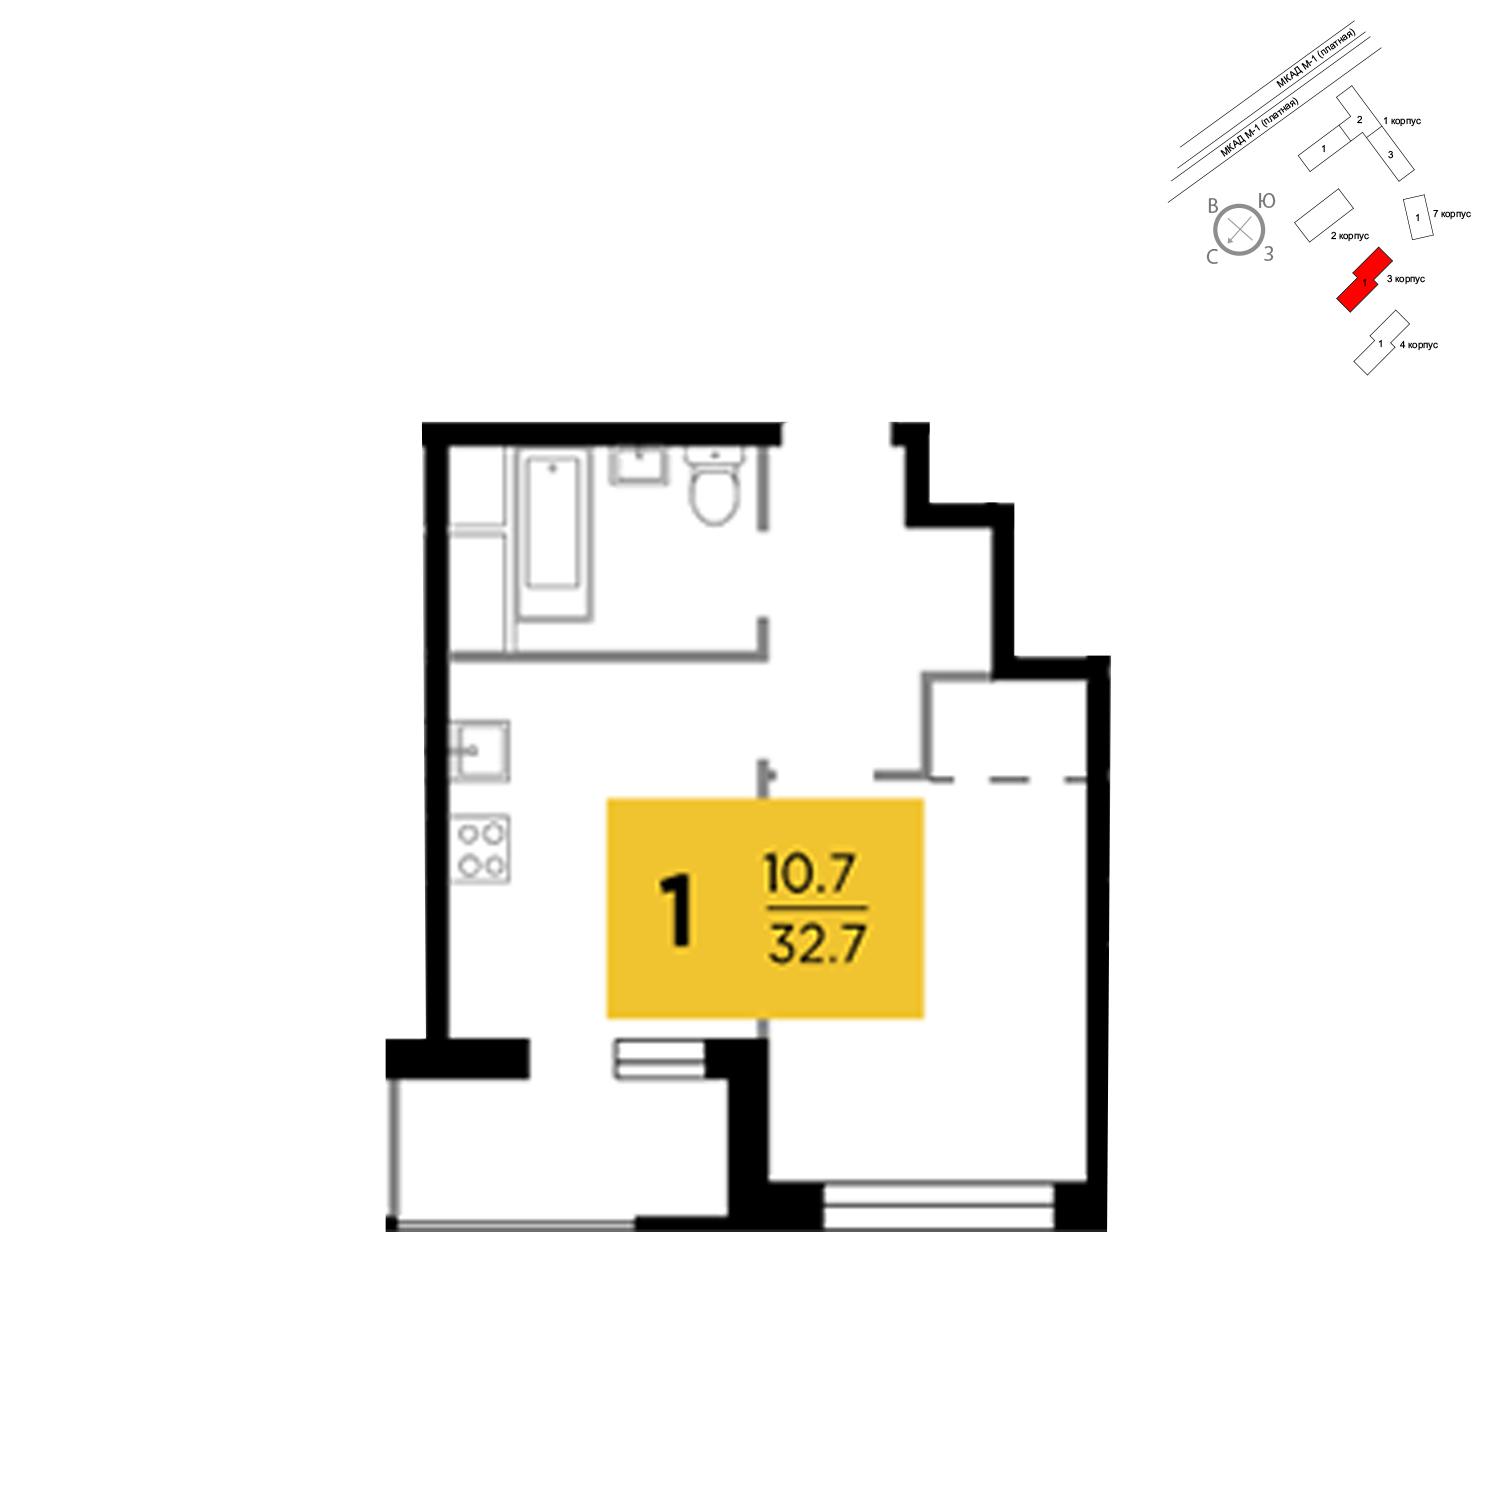 Продаётся 1-комнатная квартира в новостройке 32.7 кв.м. этаж 9/24 за 3 624 612 руб 